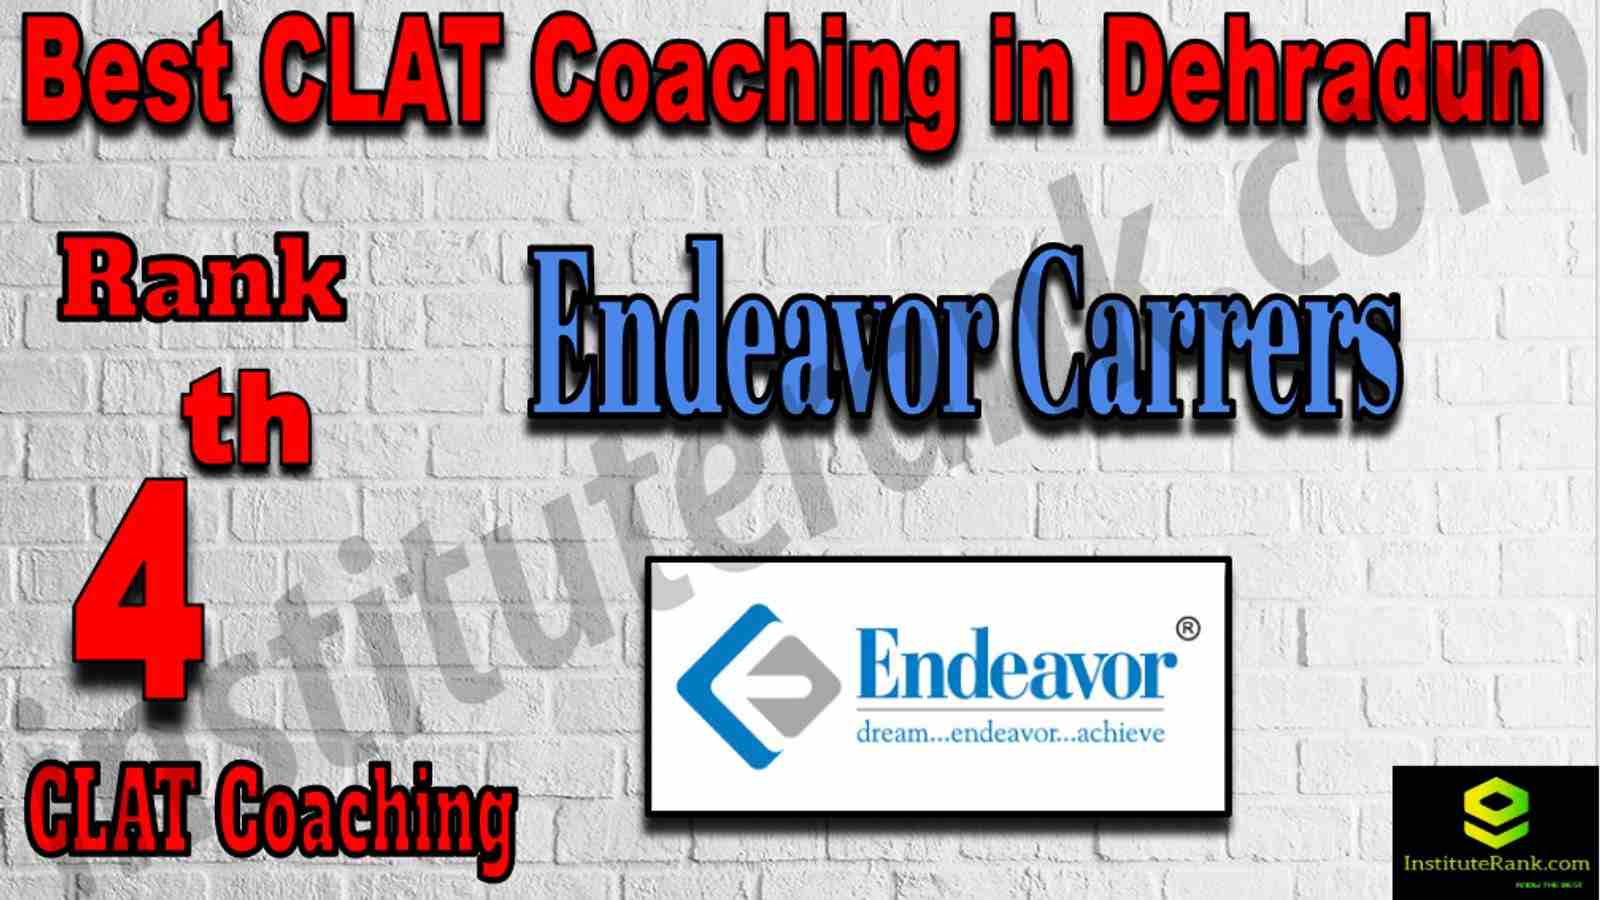 4th Best CLAT Coaching in Dehradun